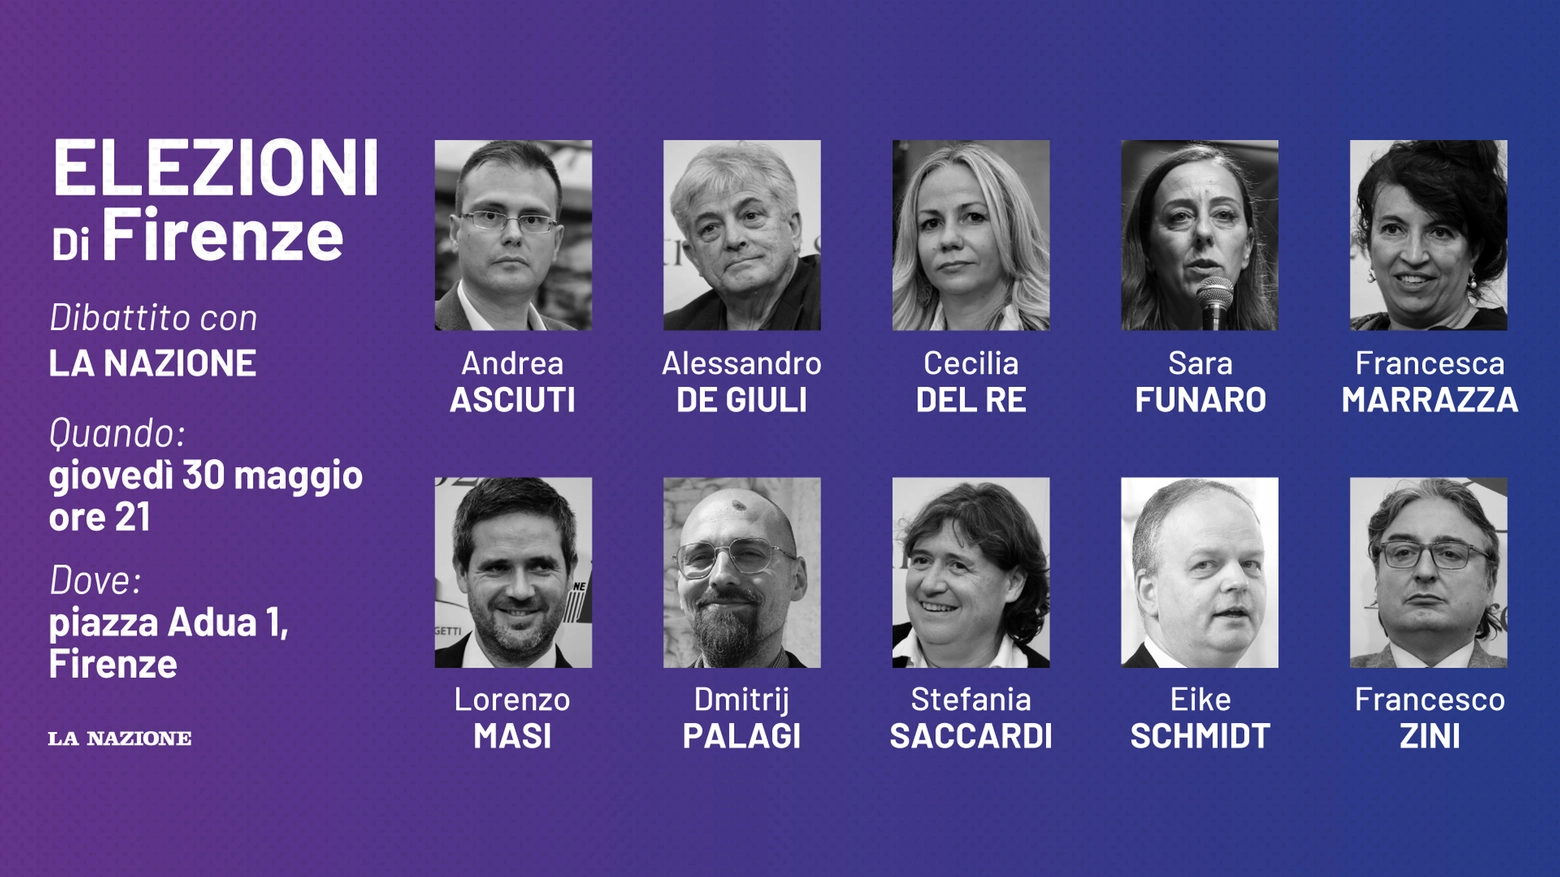 La Nazione organizza il dibattito con i candidati a sindaco di Firenze: i dieci che corrono per la poltrona di primo cittadino si confronteranno sulle domande dei giornalisti e dei cittadini